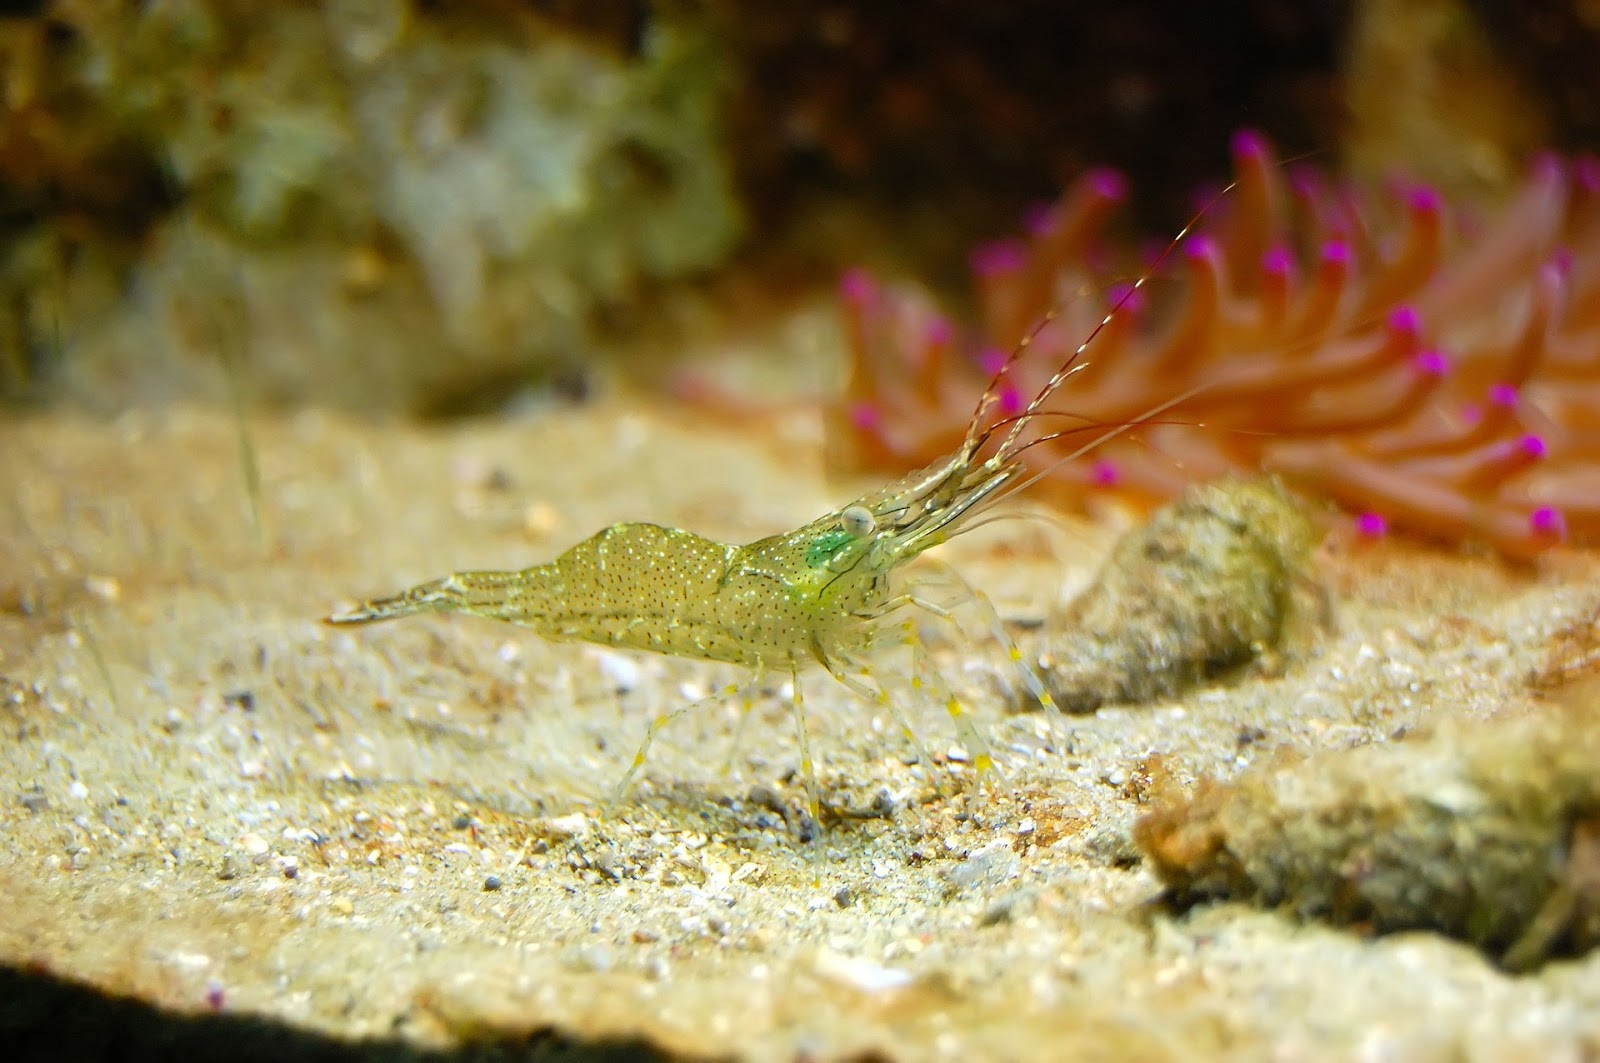 Green shrimp in aquarium